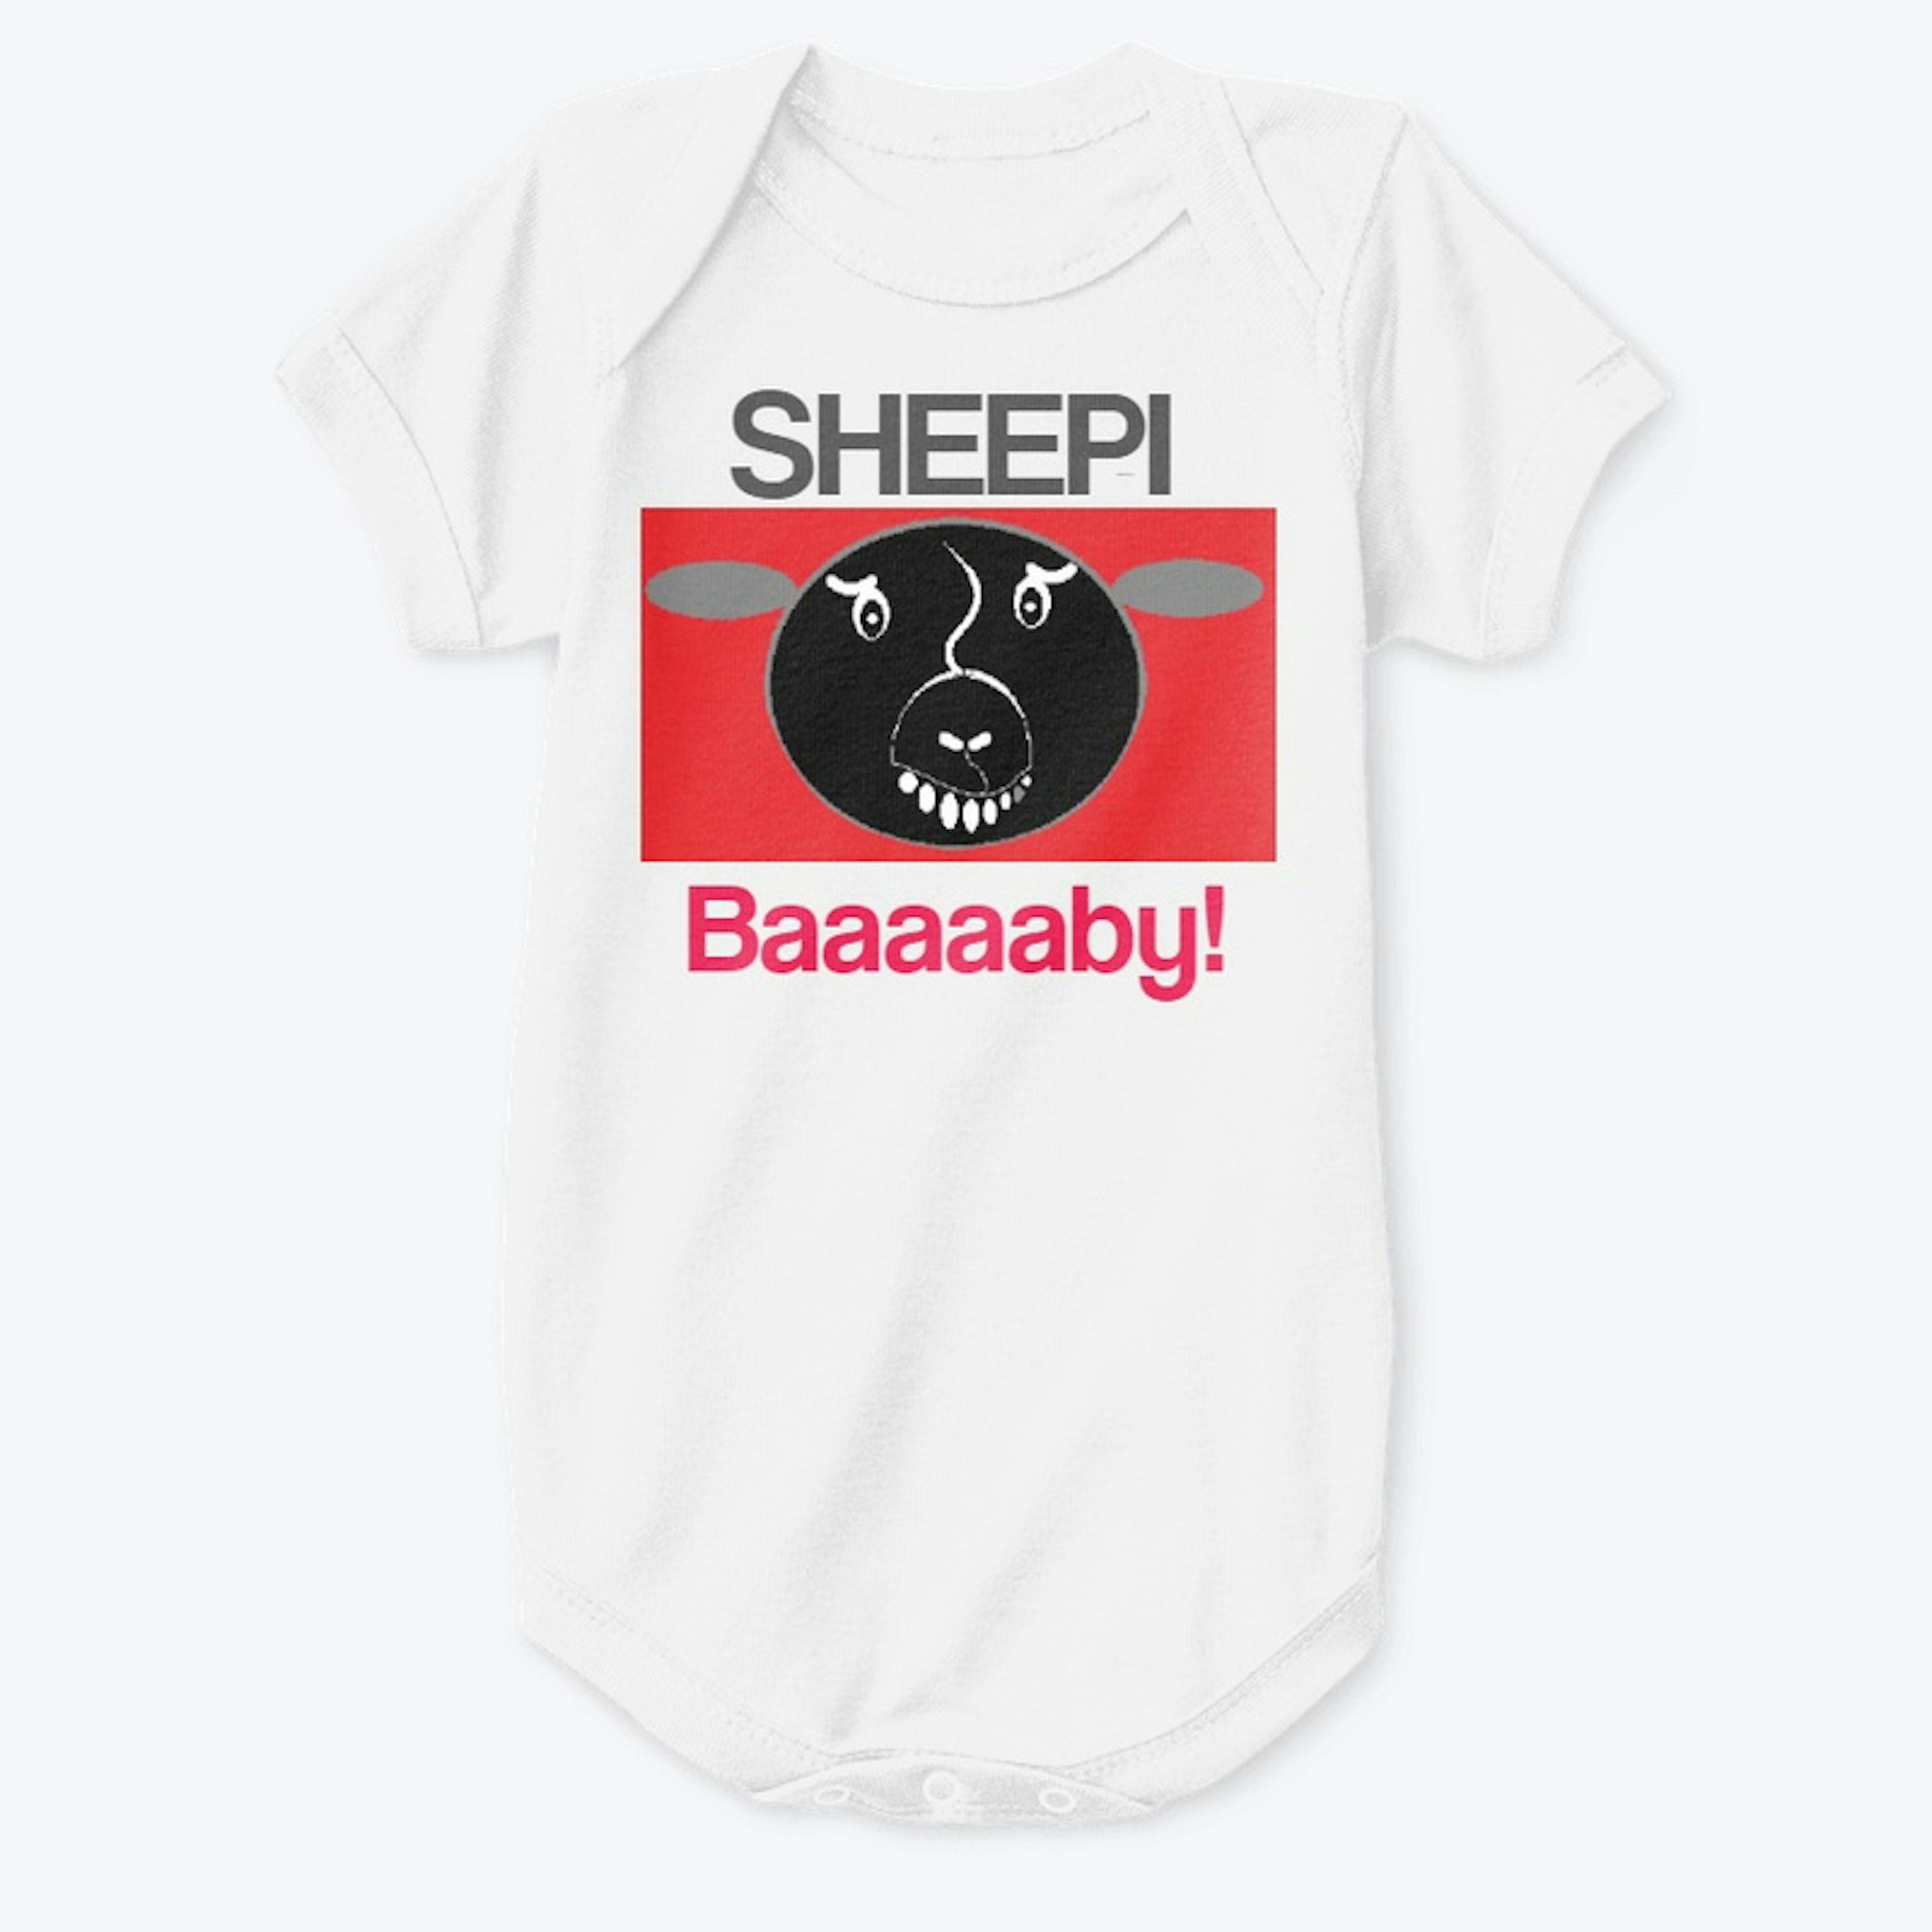 SHEEPI Code RED!